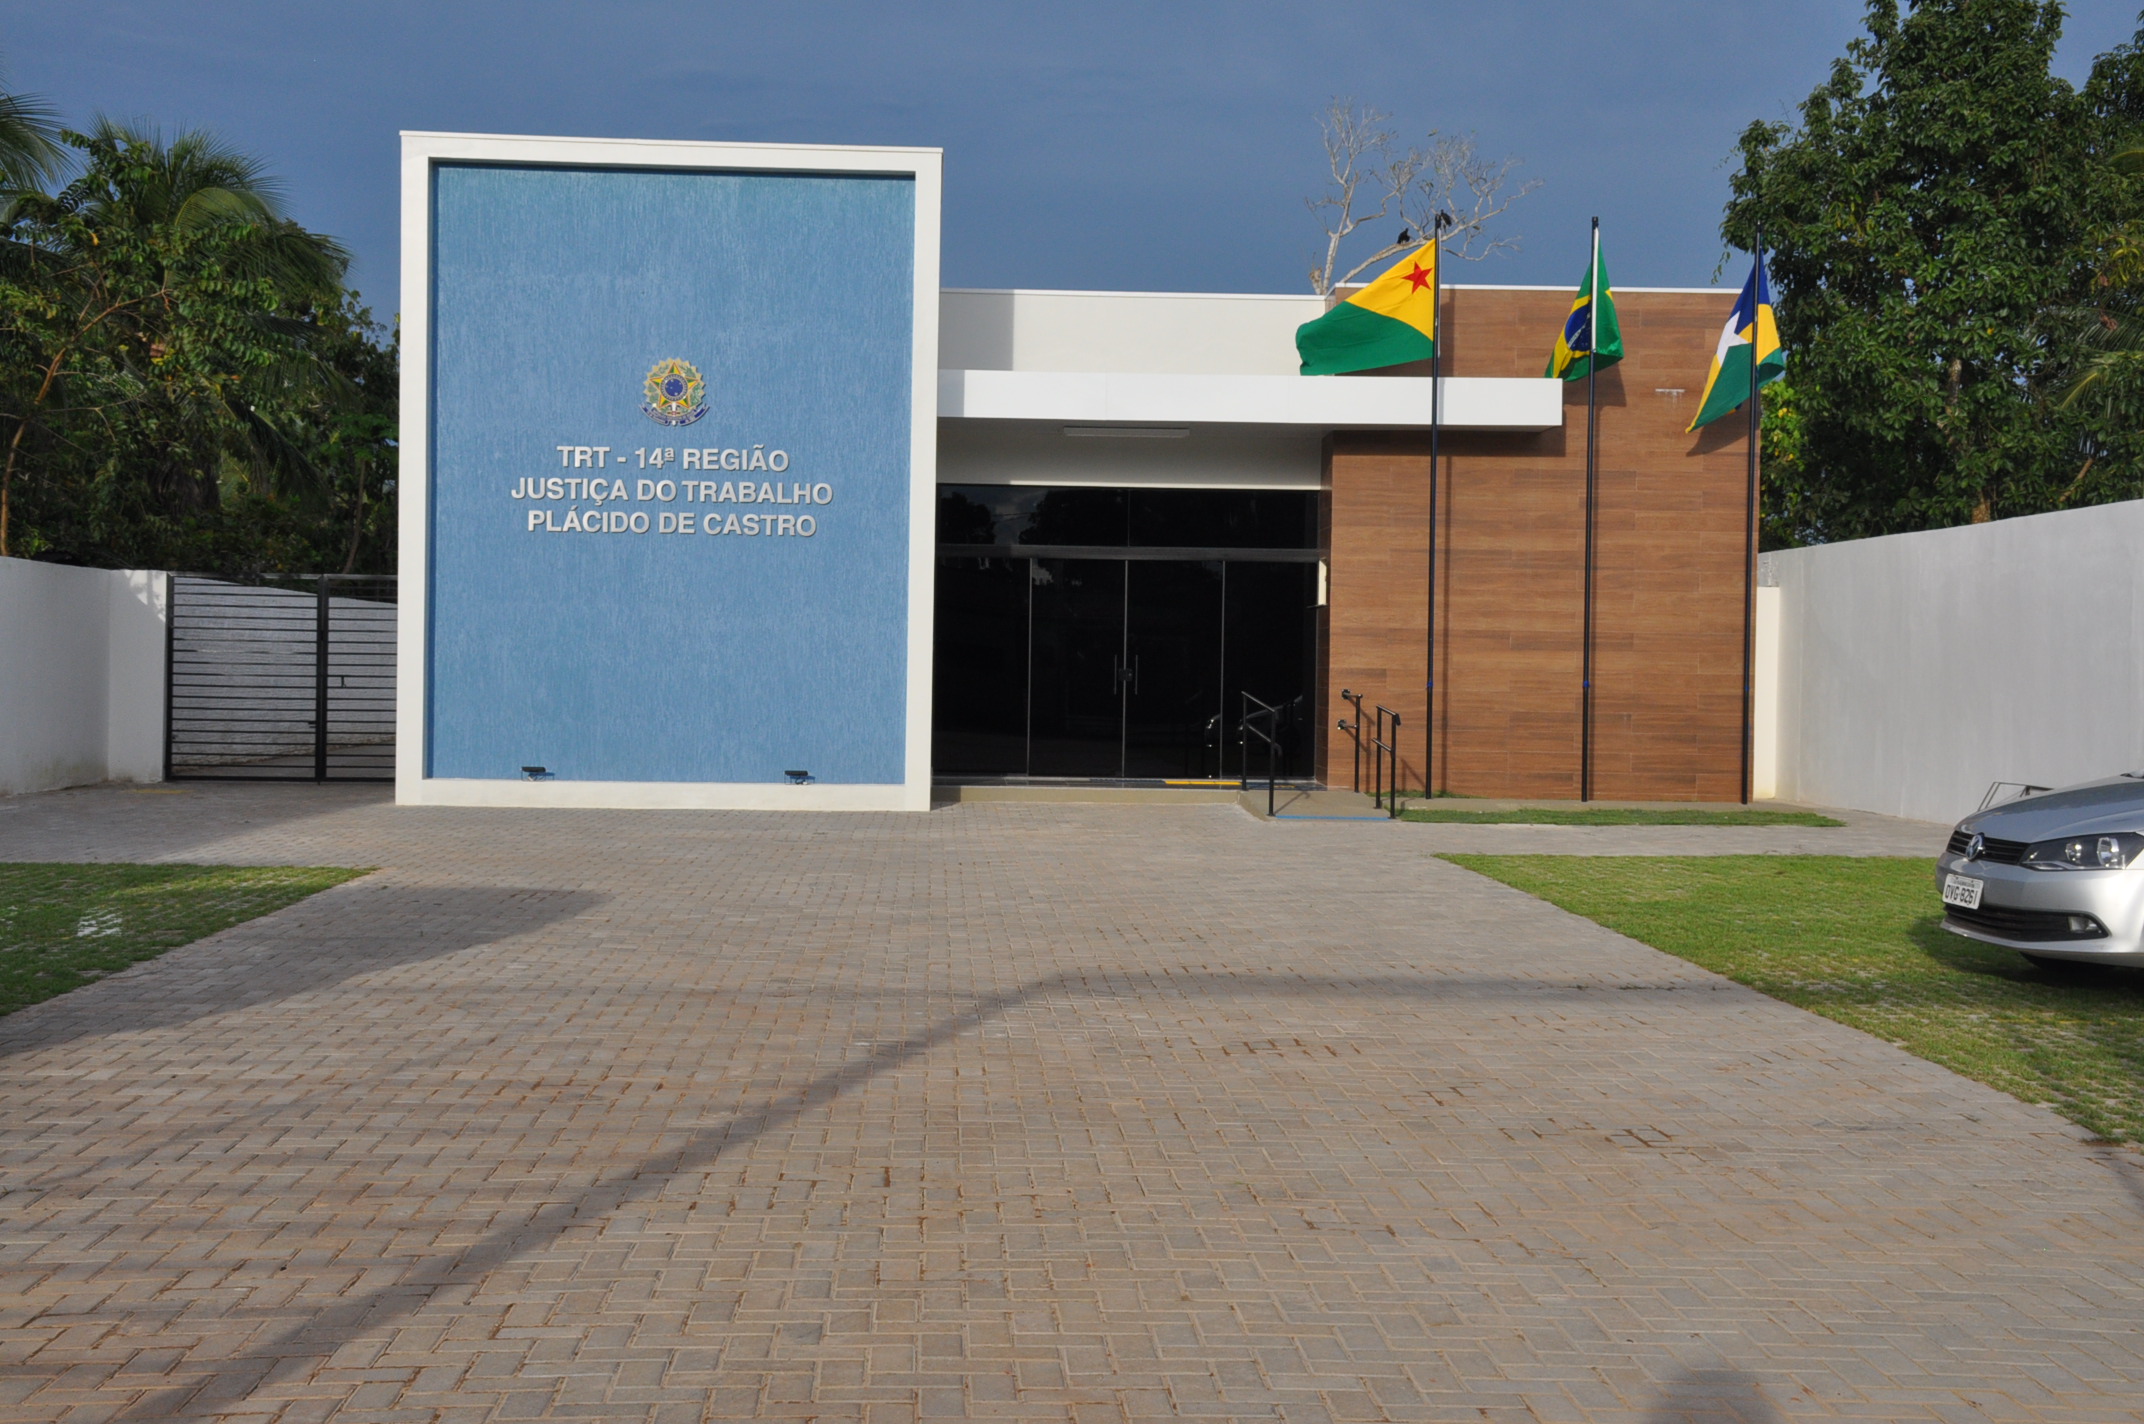 Imagem da fachada da nova sede da Vara do Trabalho de Plácido de Castro, com letreiros de identificação